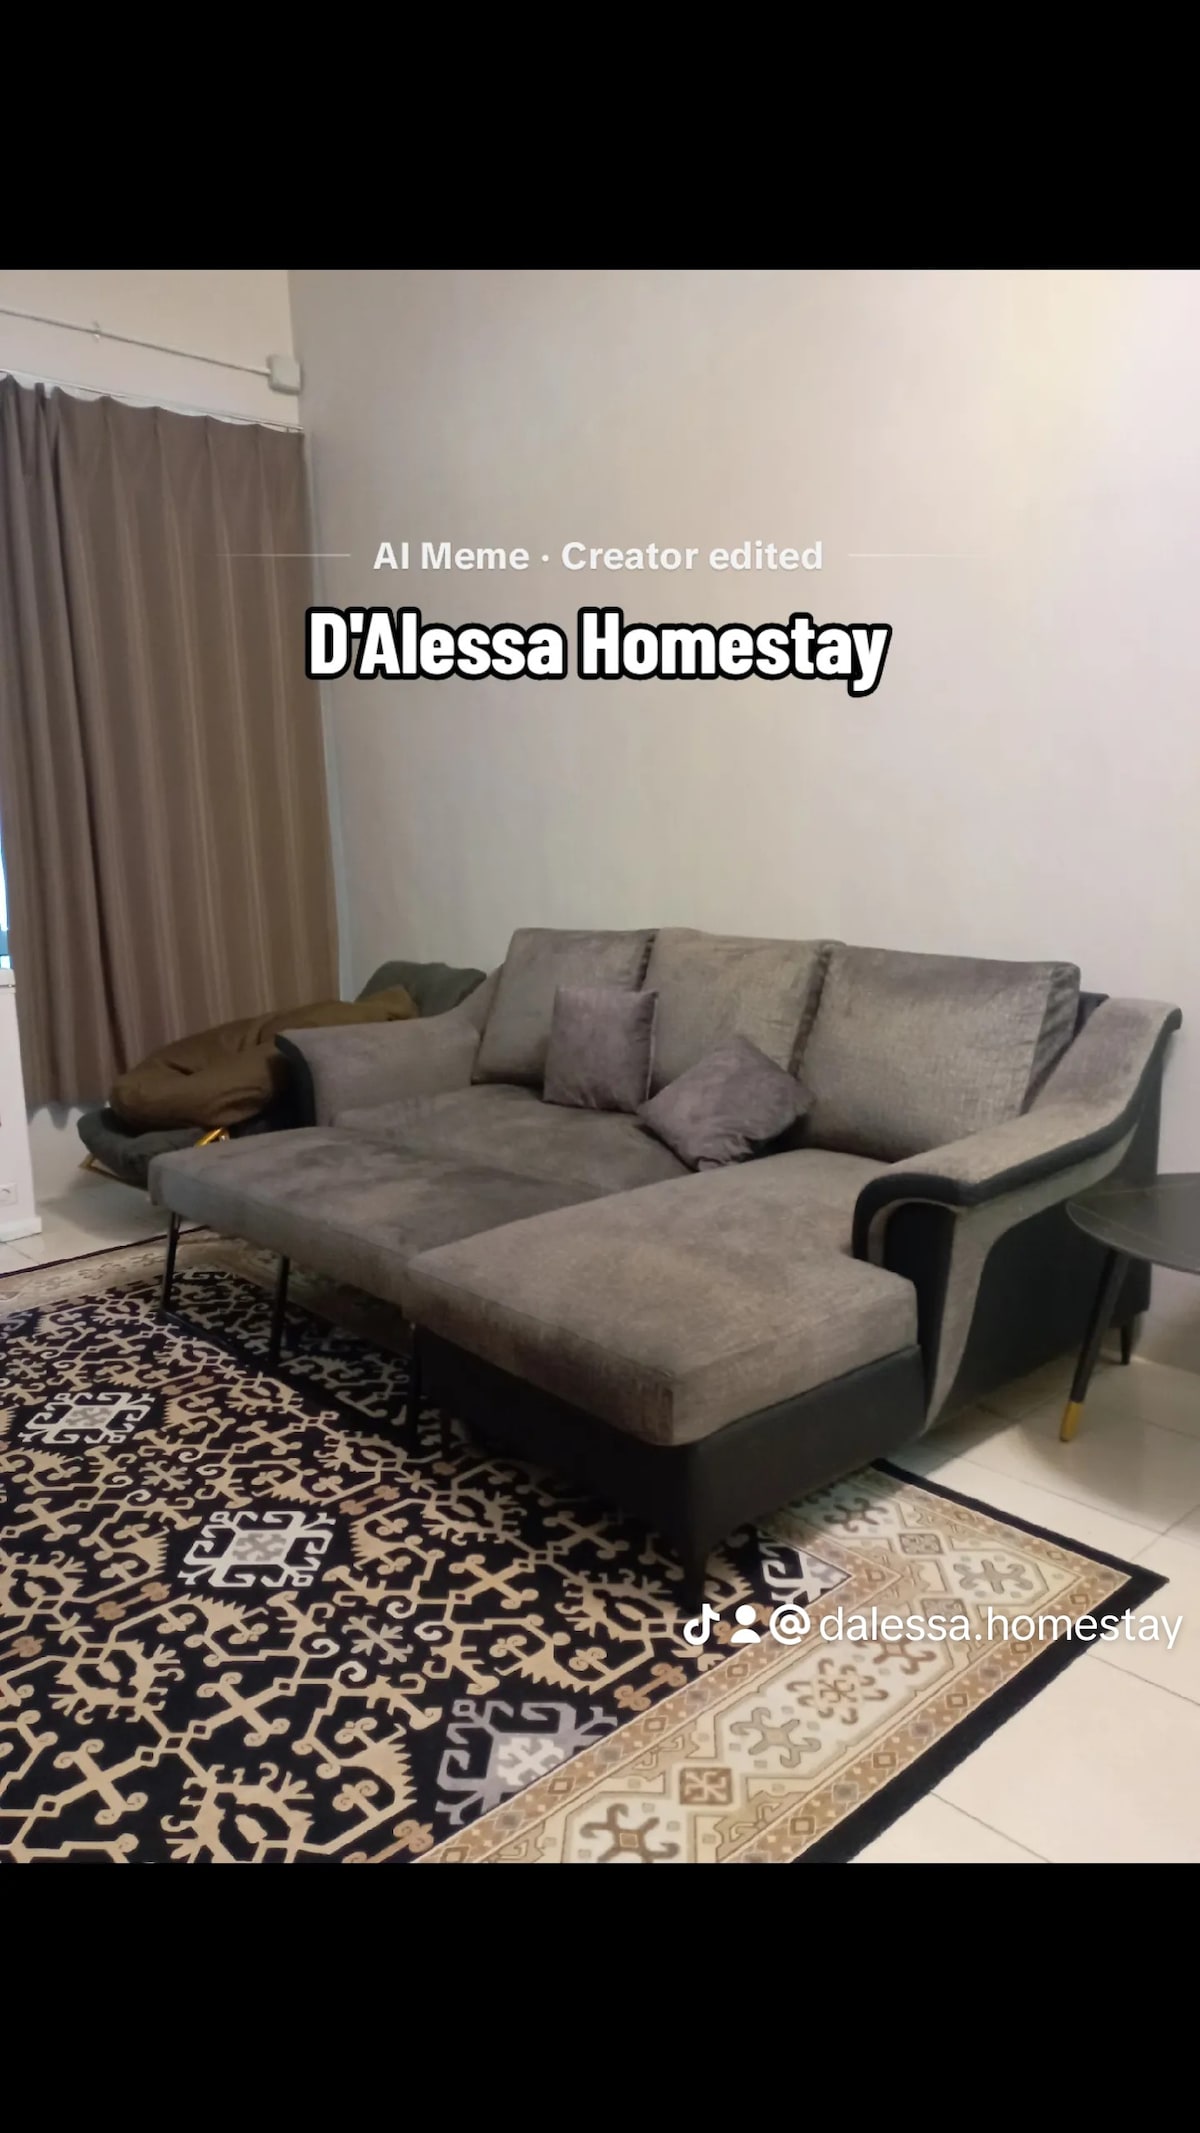 D'Alessa Homestay